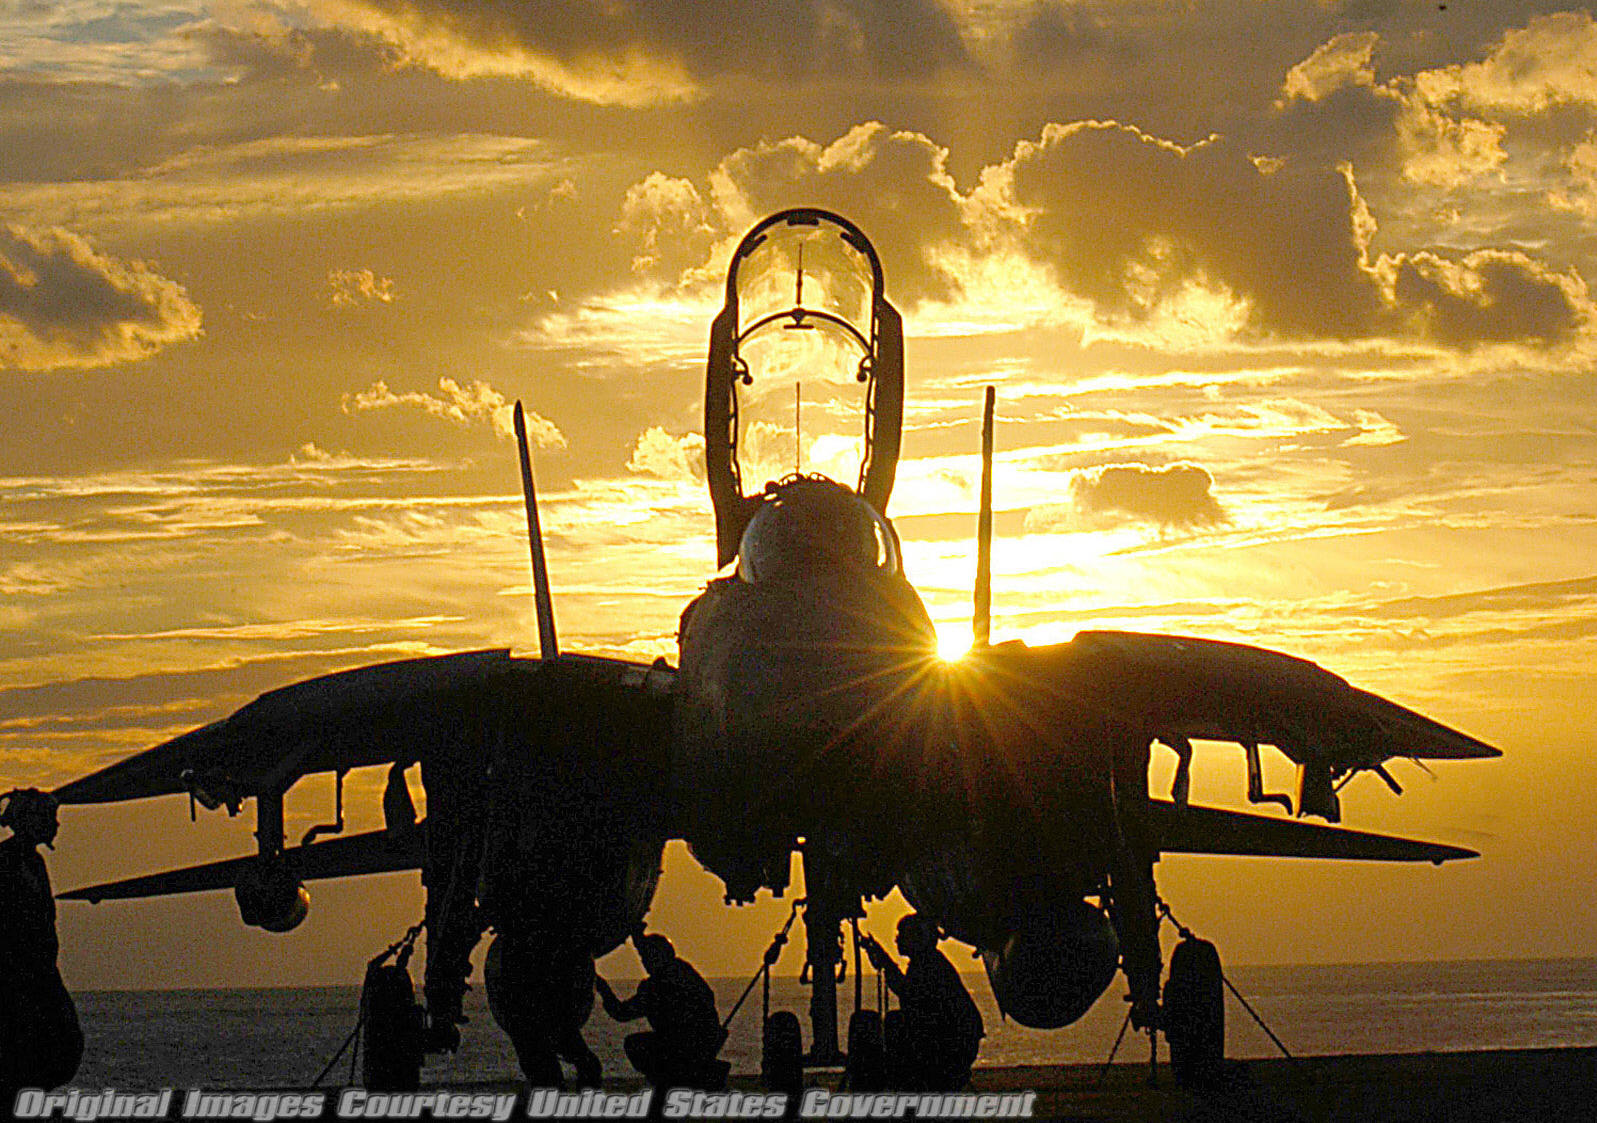 صور جوية عسكرية رائعة - متجدد -  F-14+silhouette